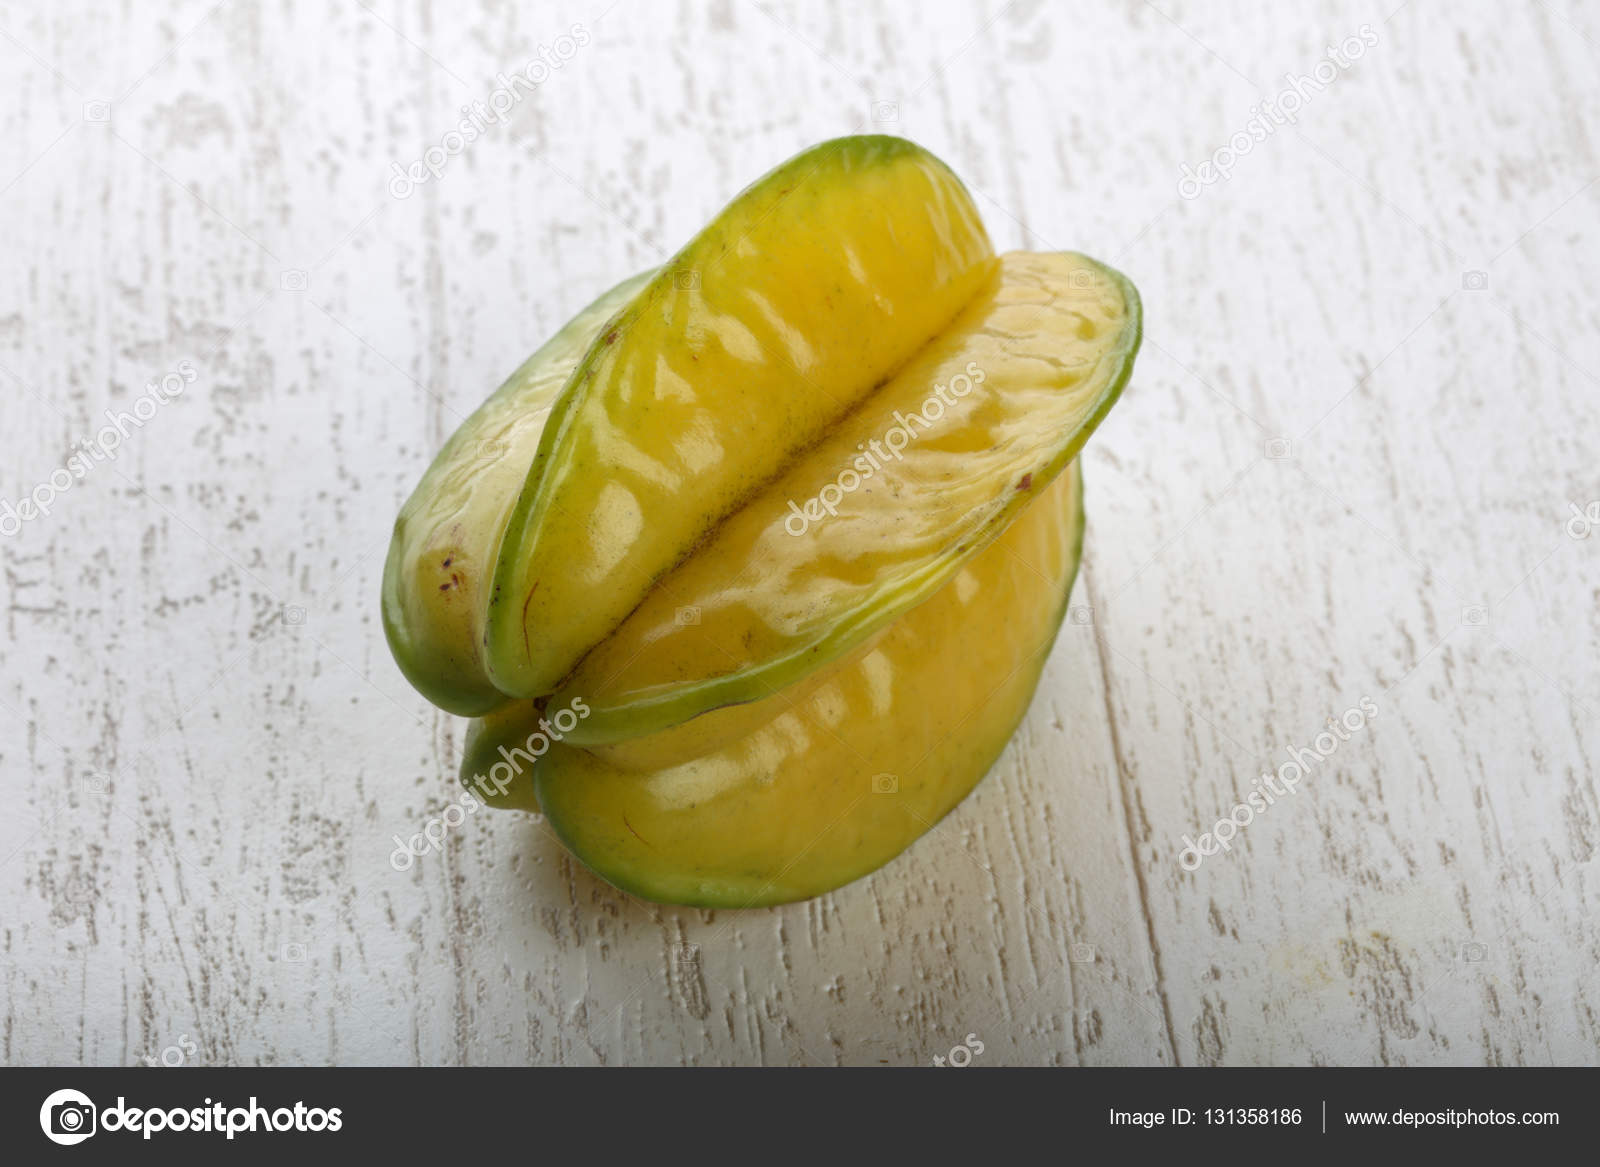 Exotische Fruchtkarambolage - Stockfotografie: lizenzfreie Fotos ...